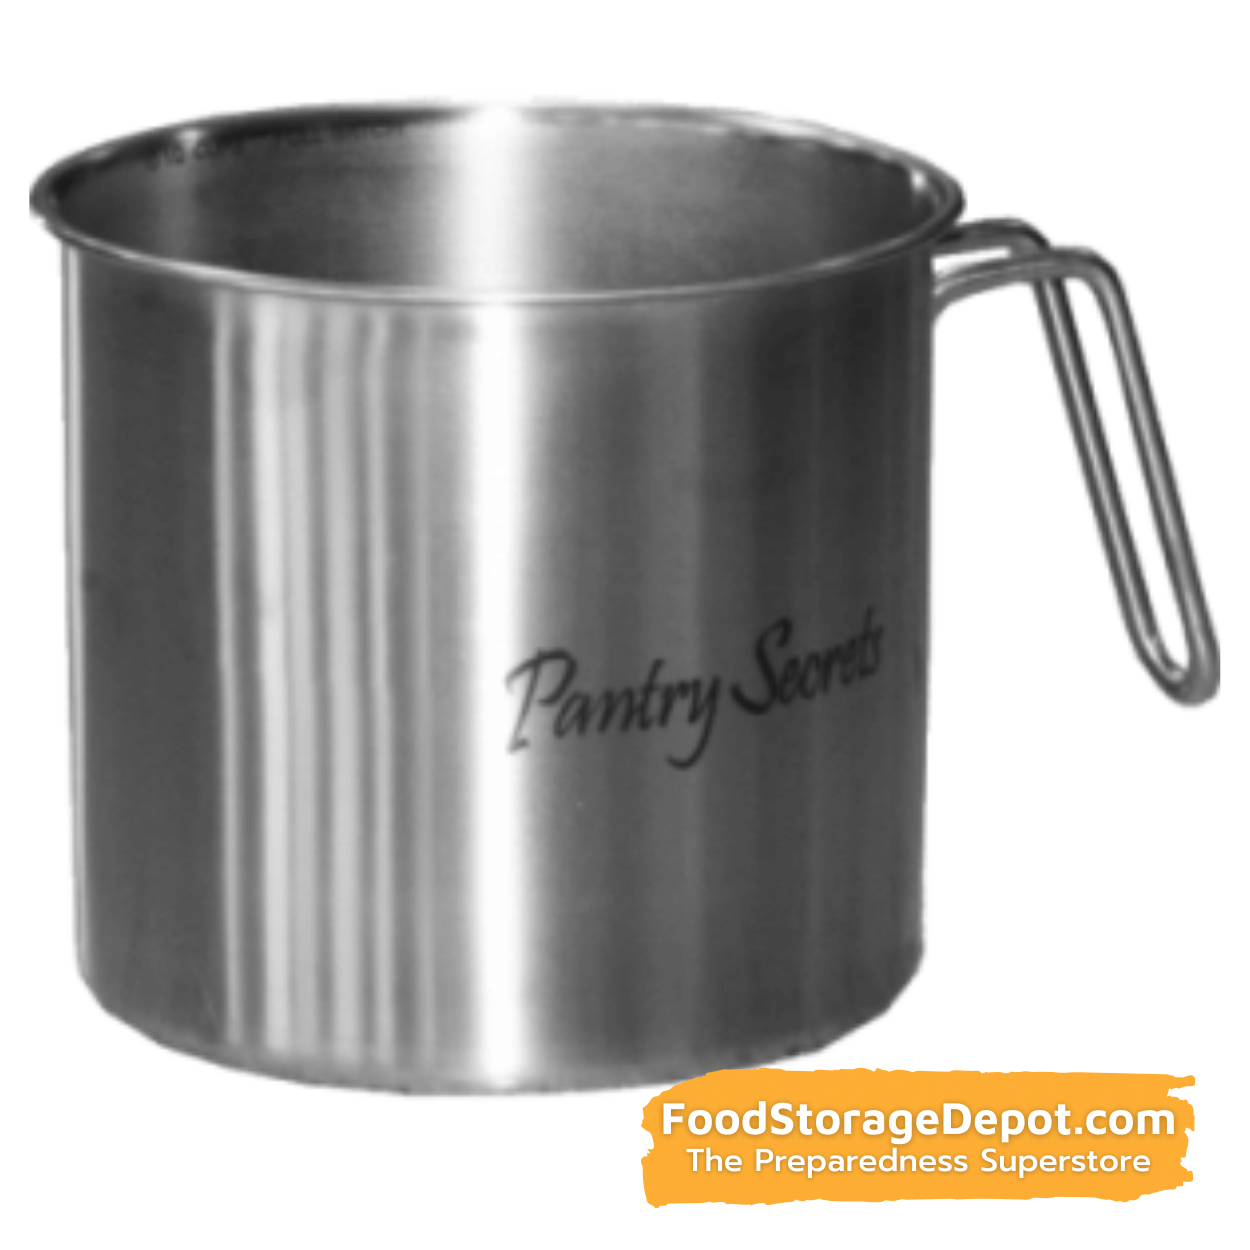 Pantry Secrets 10.5 Cup Flour Scoop